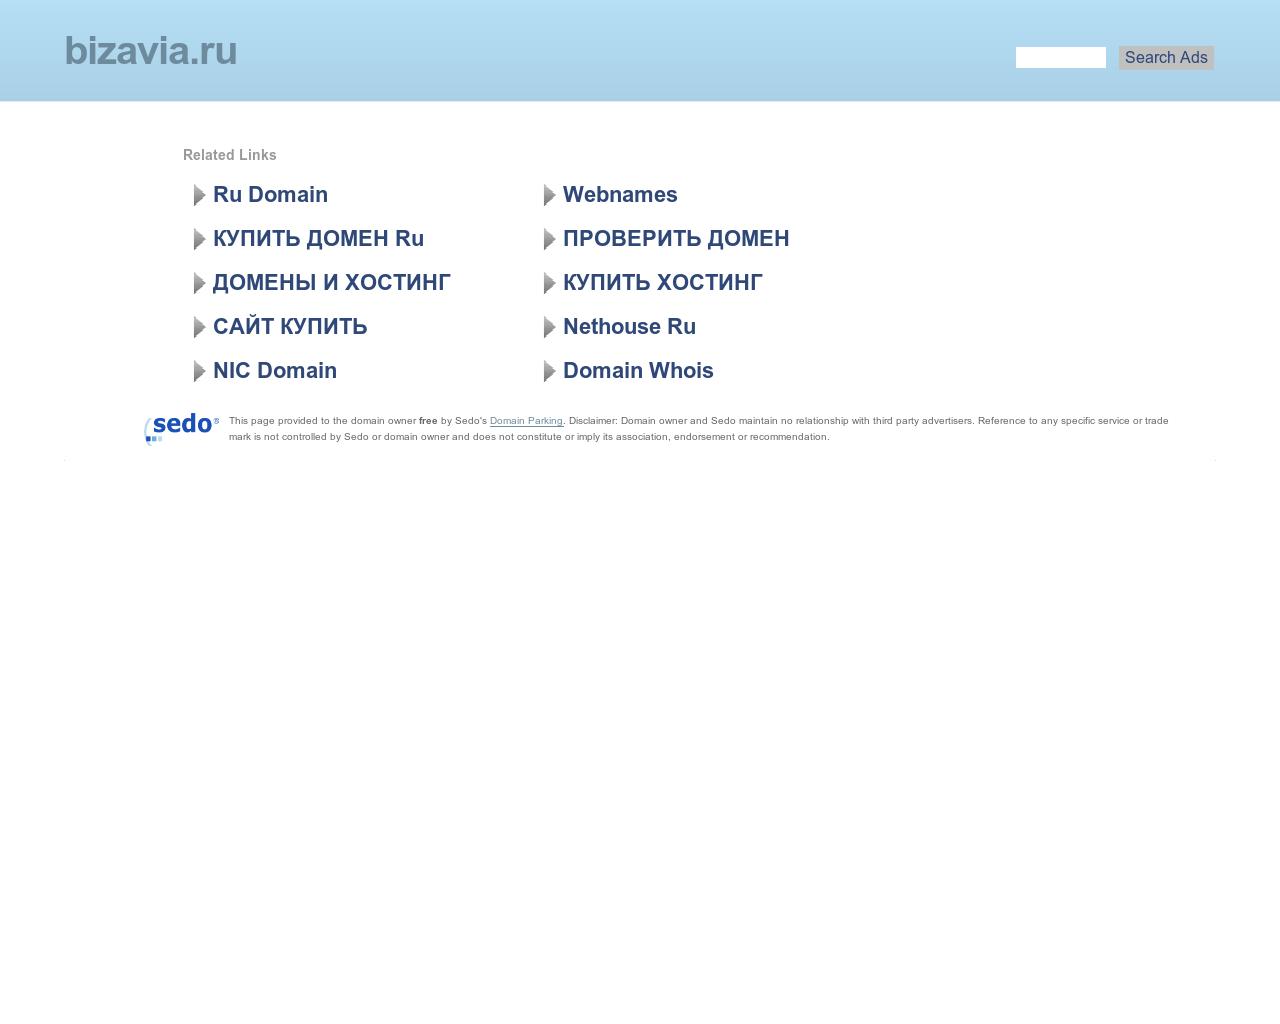 Изображение сайта bizavia.ru в разрешении 1280x1024